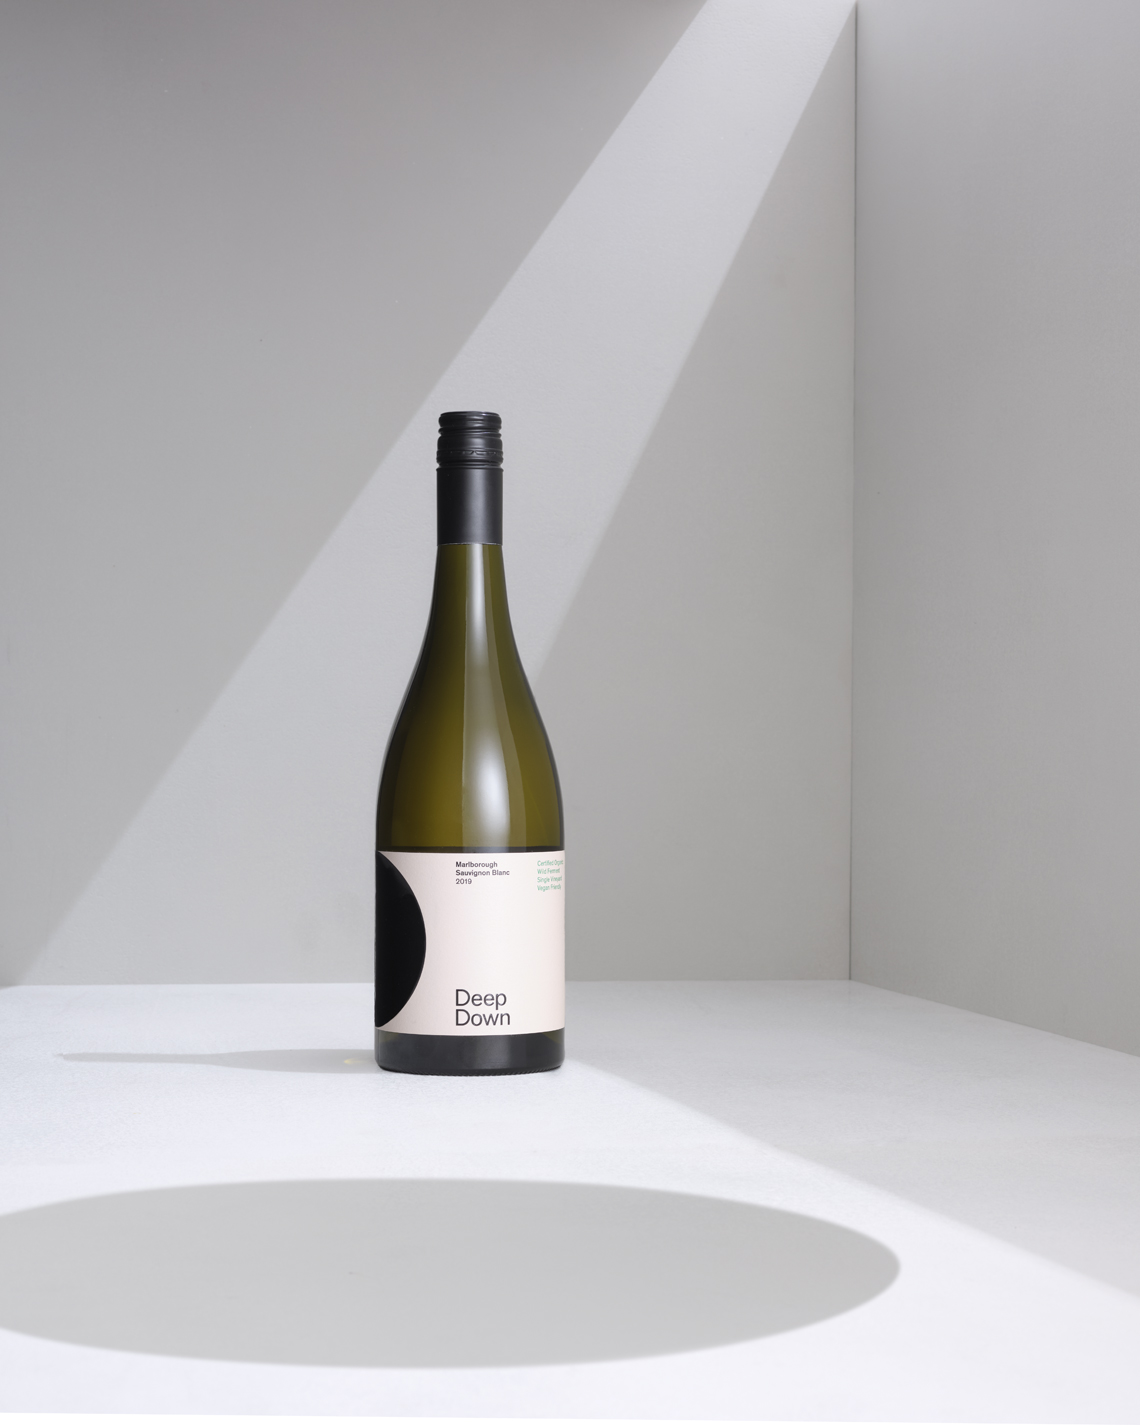 Wine bottle on white background